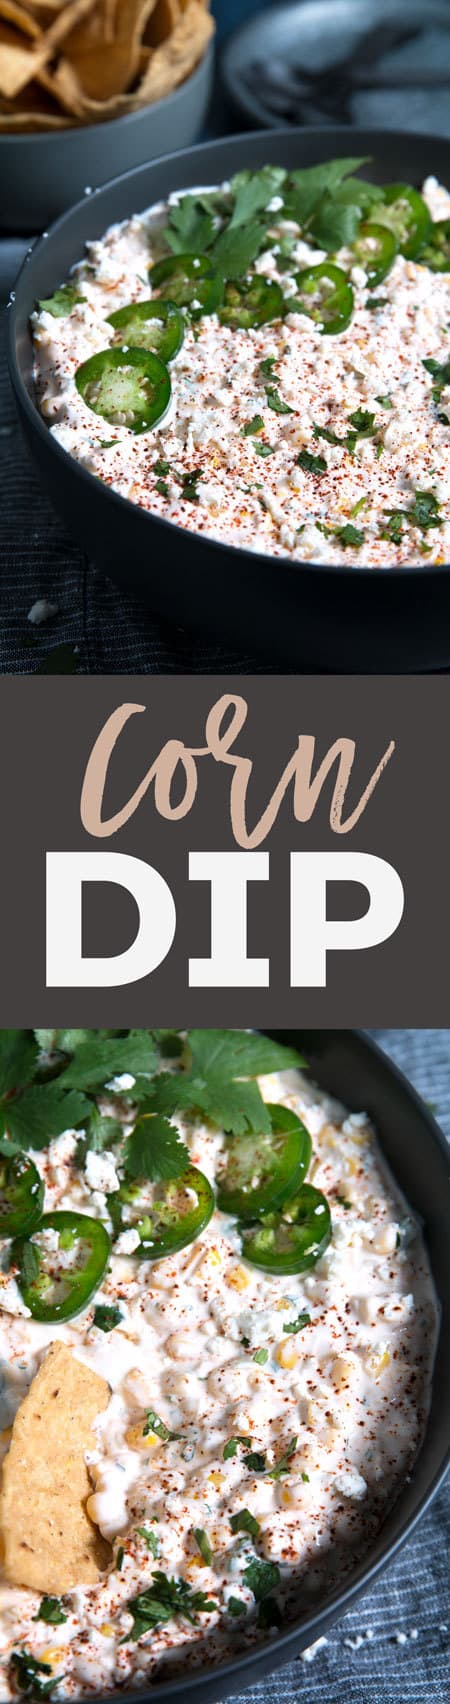 corn dip pin